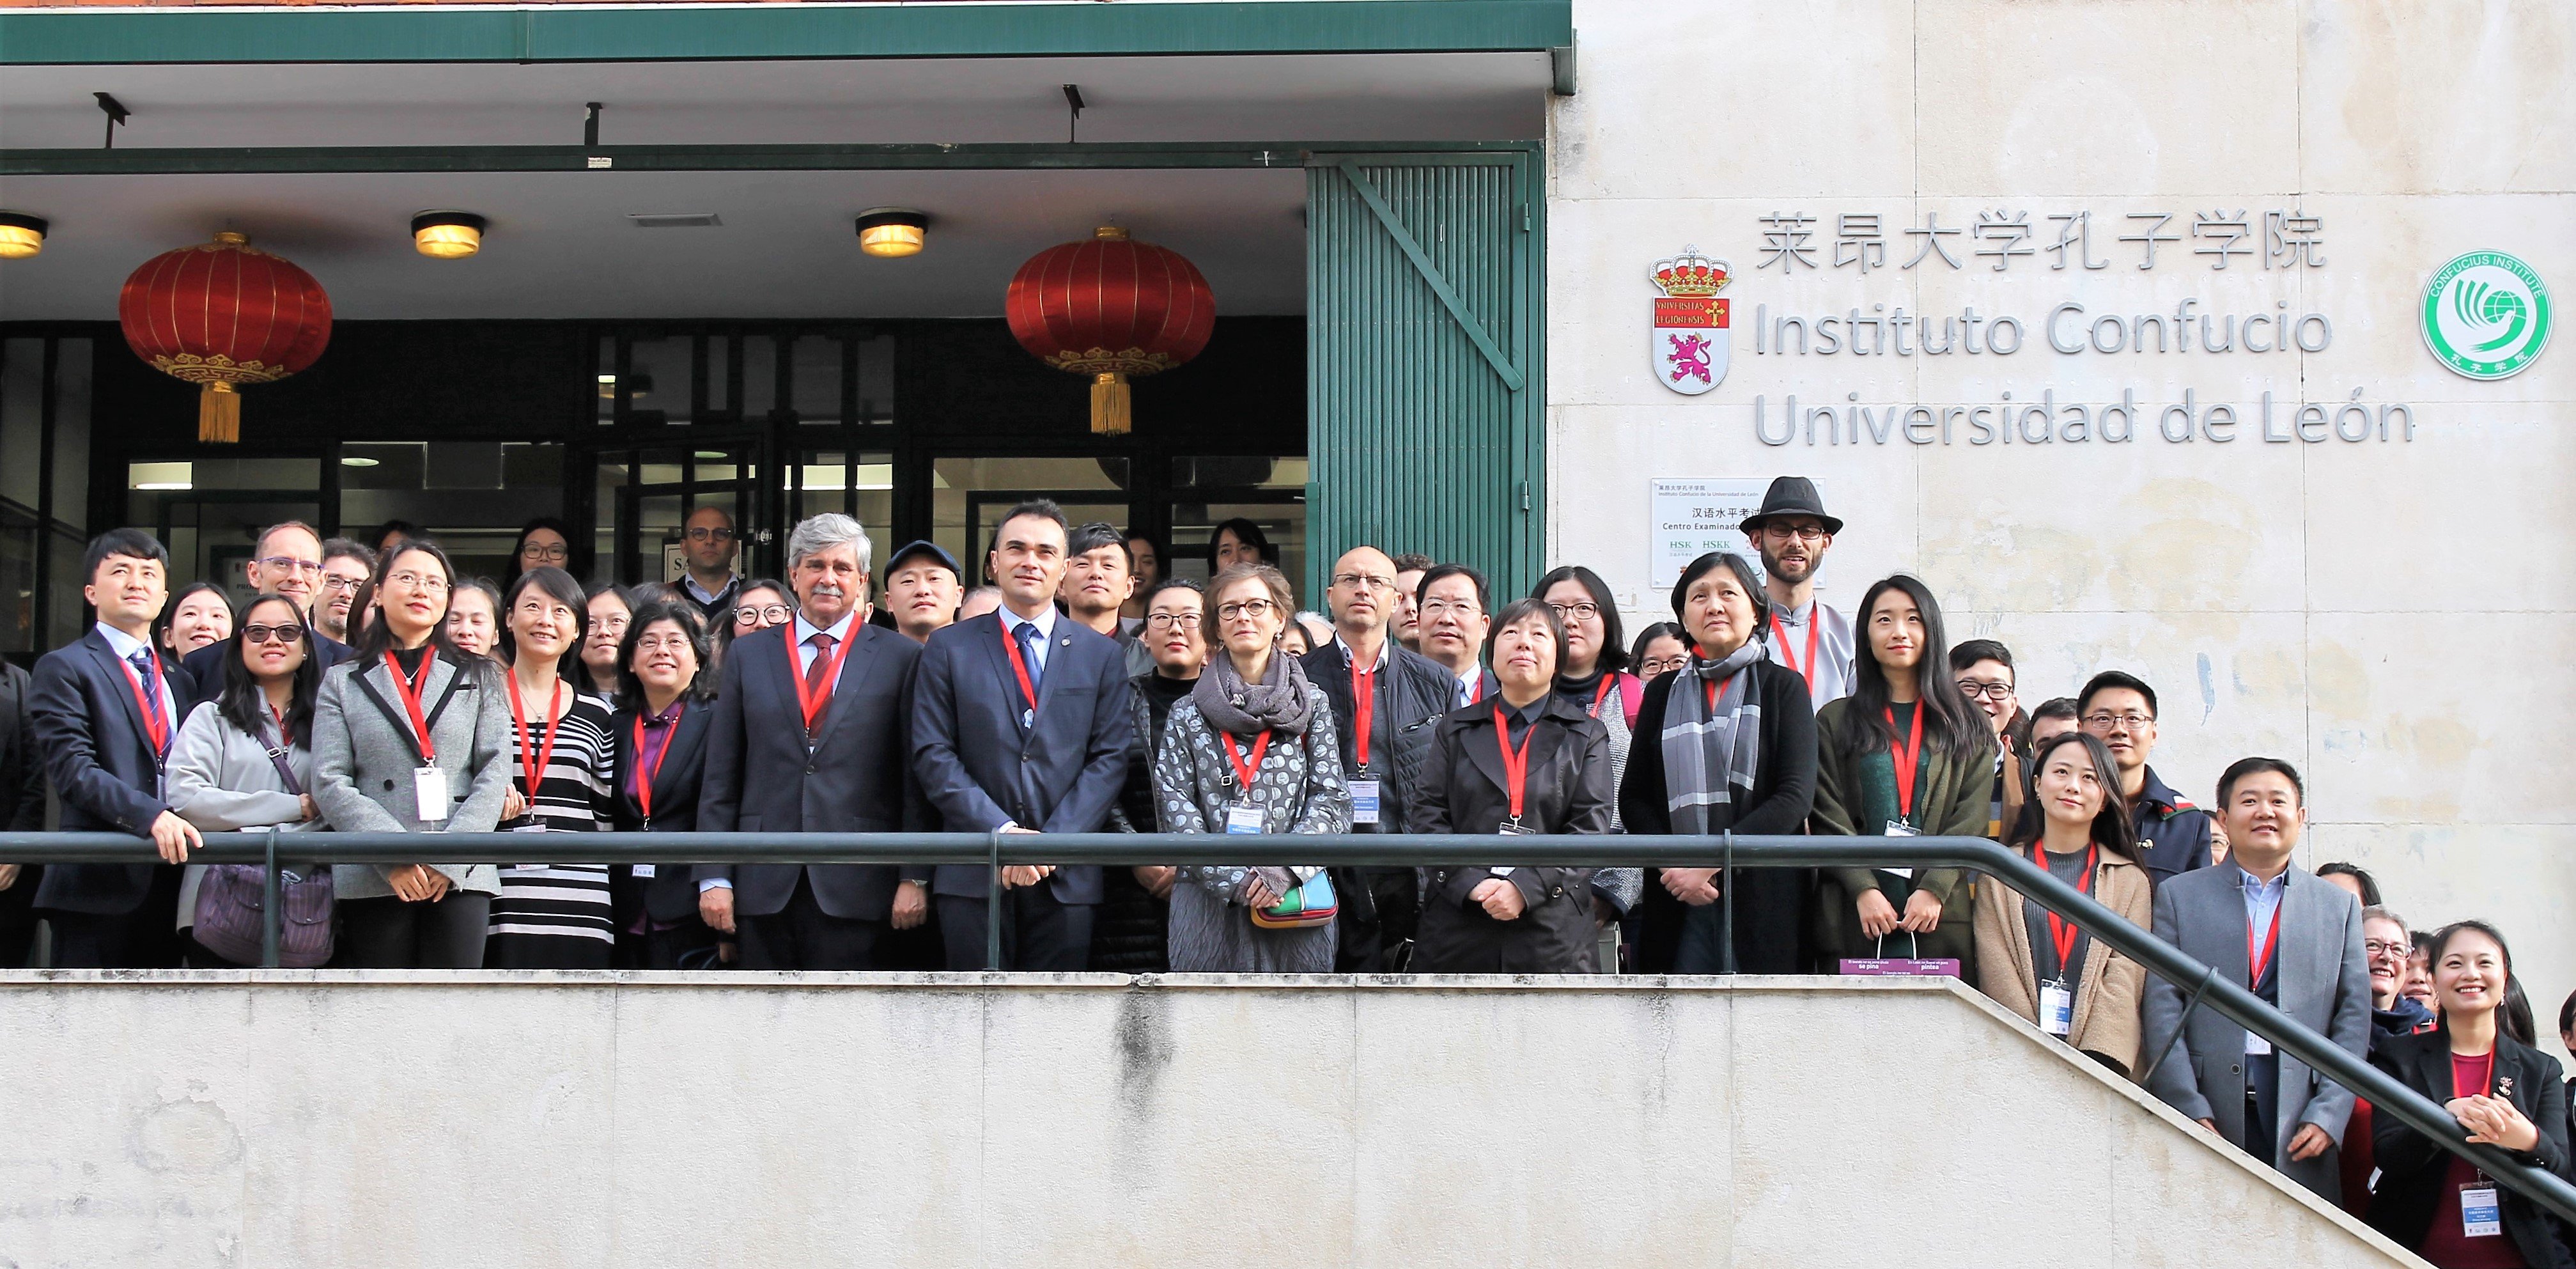 El Instituto Confucio de la Universidad de León designado como 'mejor del mundo en el 2019' - imagen 3